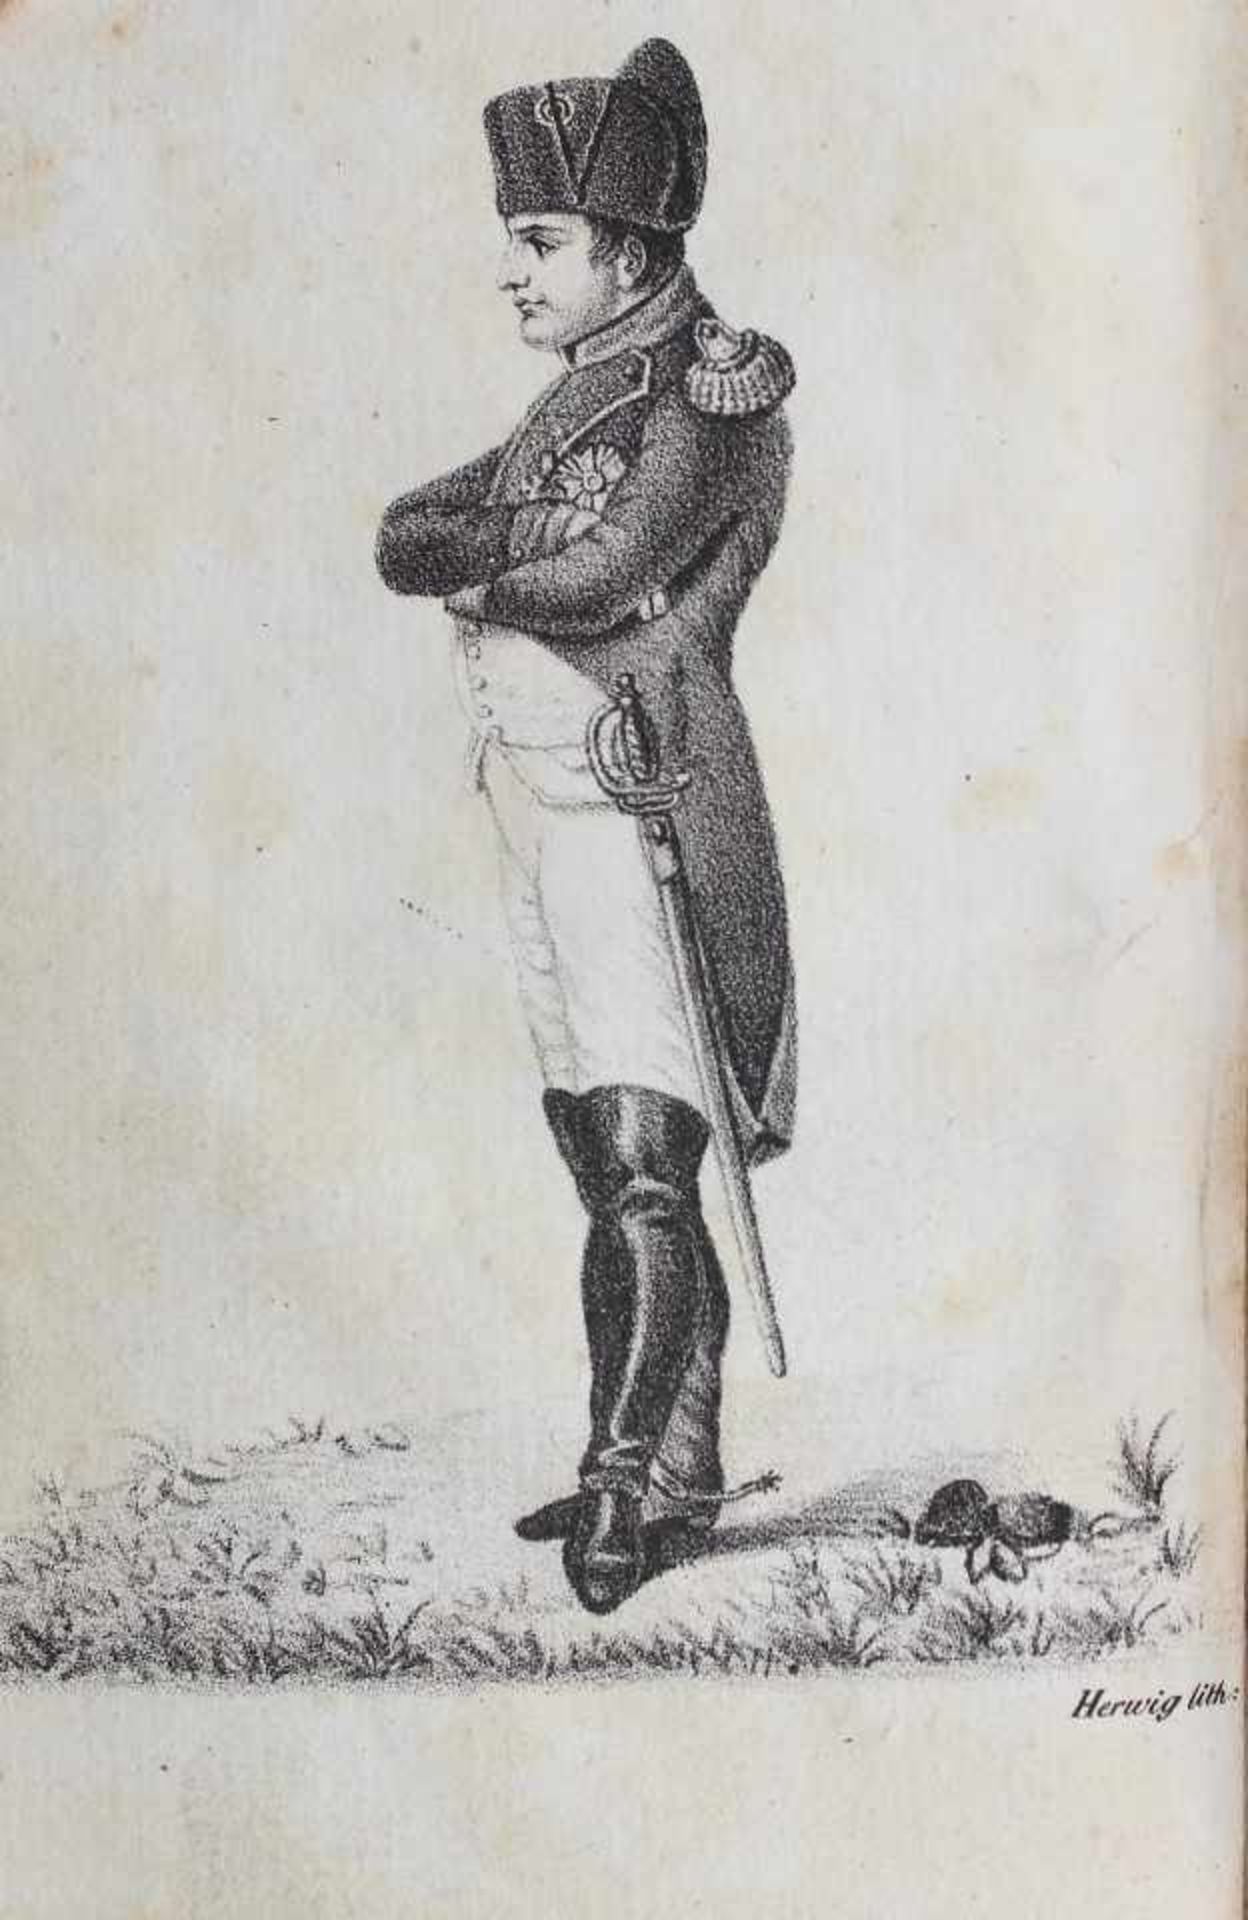 Buch aus dem 19.Jahrhundert "Geschichte Napoleons und der großen Armee im Jahre 1812", von dem